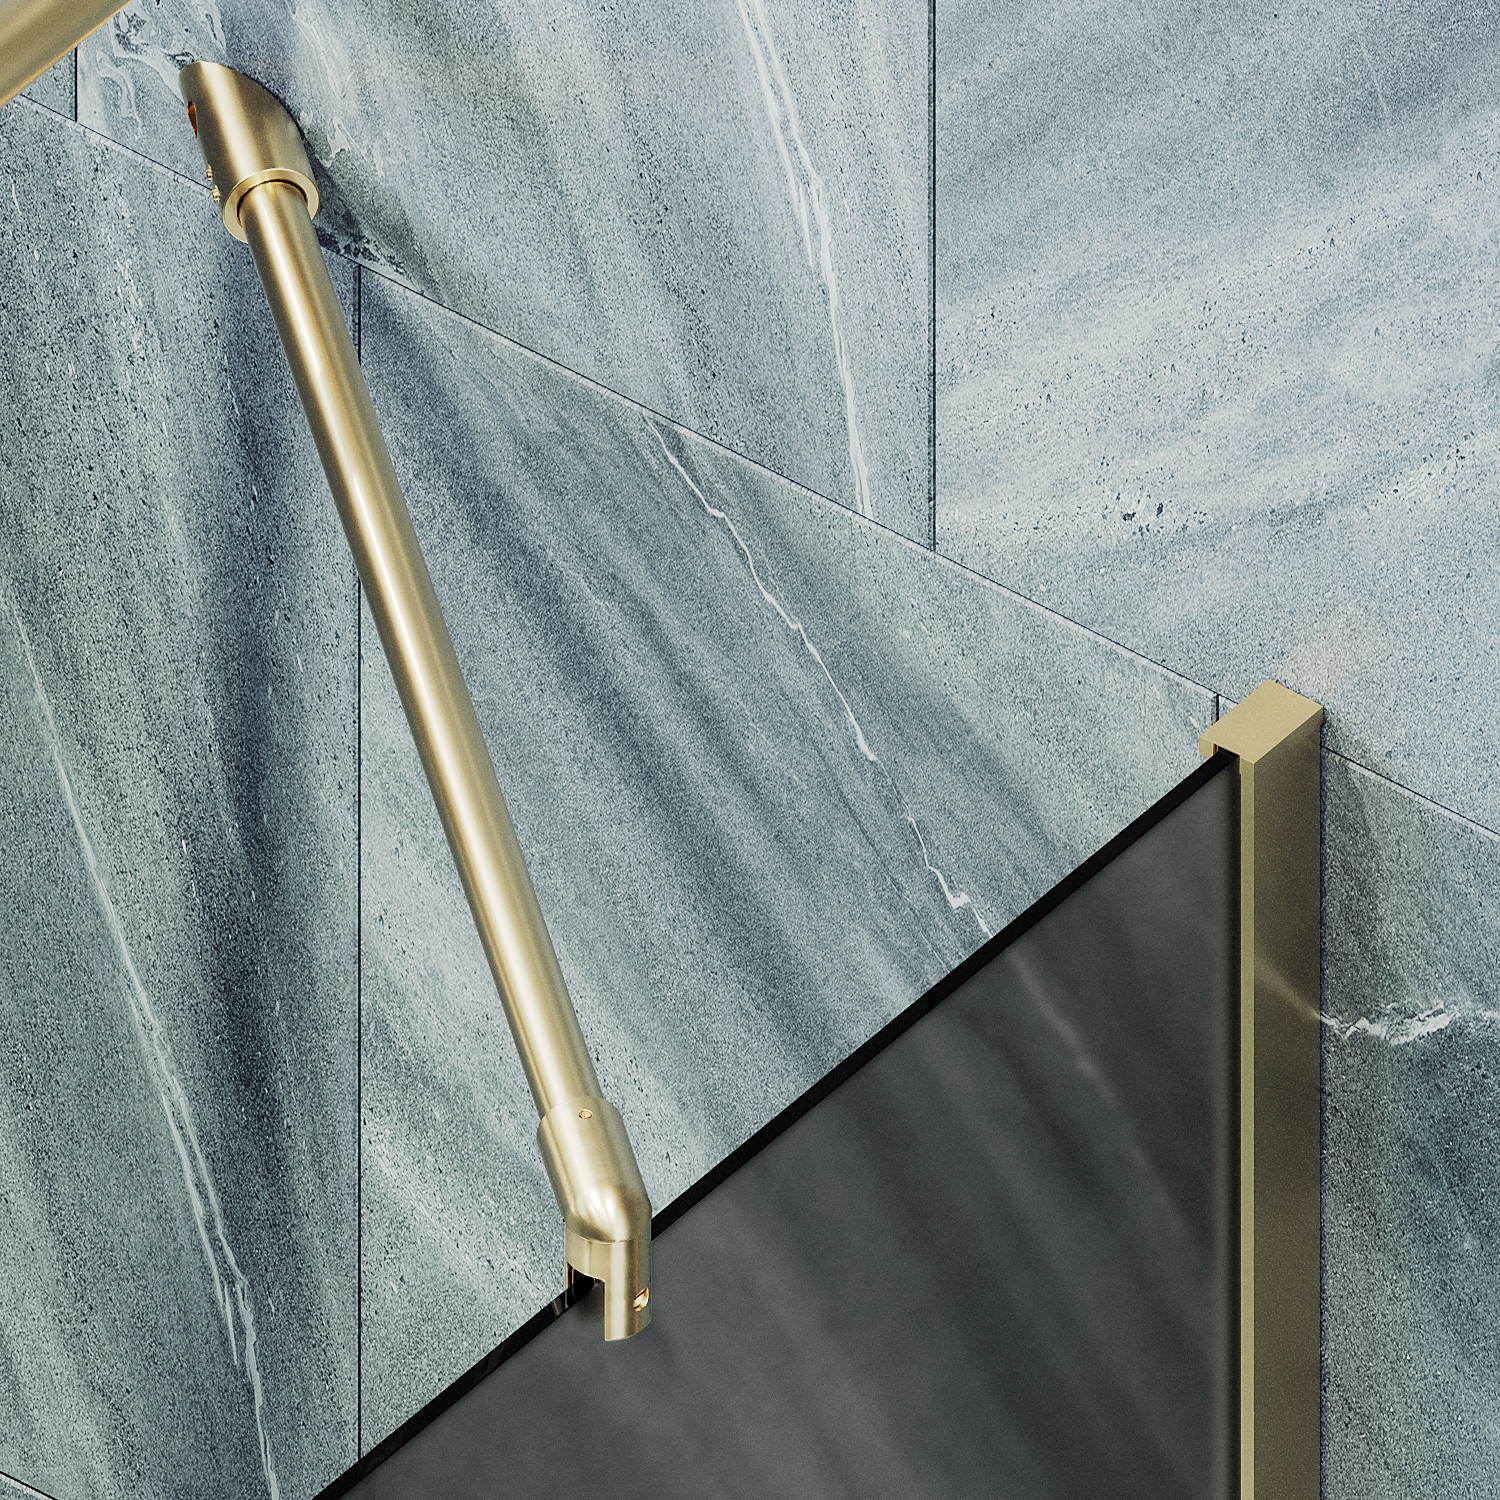 Шторка для ванны MaybahGlass 80х140 MGV-88-3ш стекло графит матовый, профиль золото - фото 3